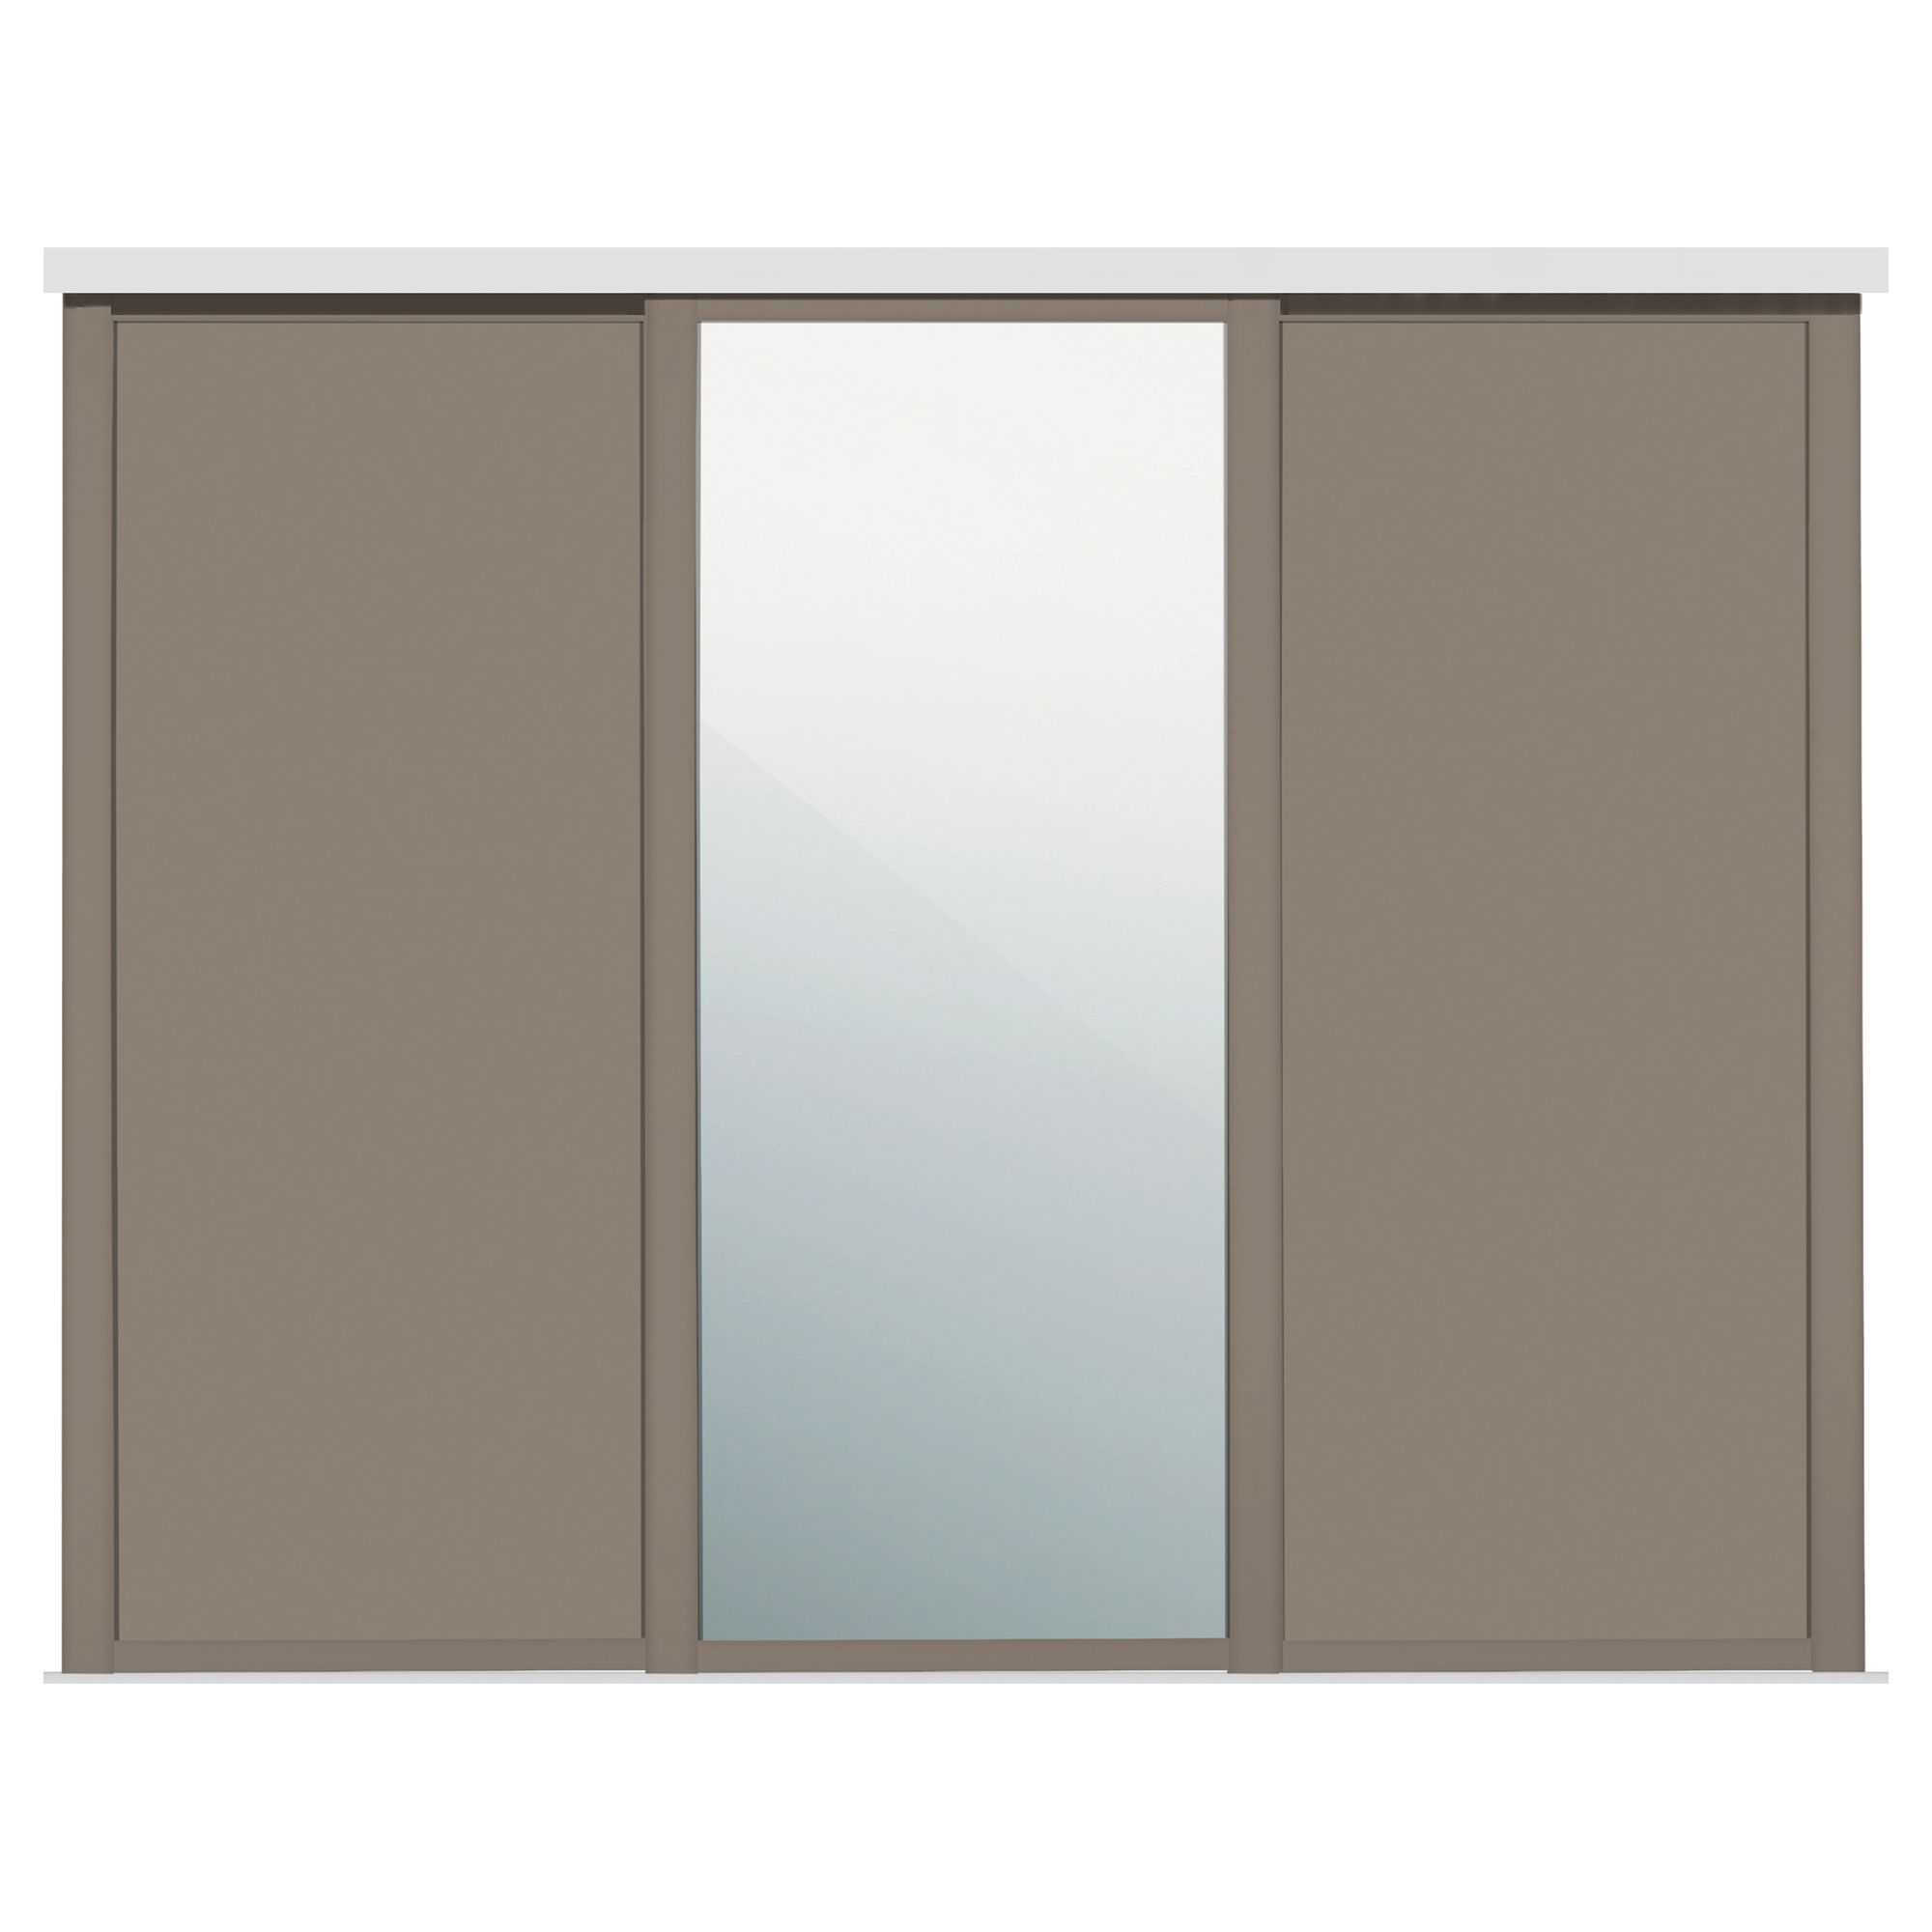 Panel Shaker With 1 mirror door Stone grey 3 door Sliding Wardrobe Door kit (H)2260mm (W)1680mm